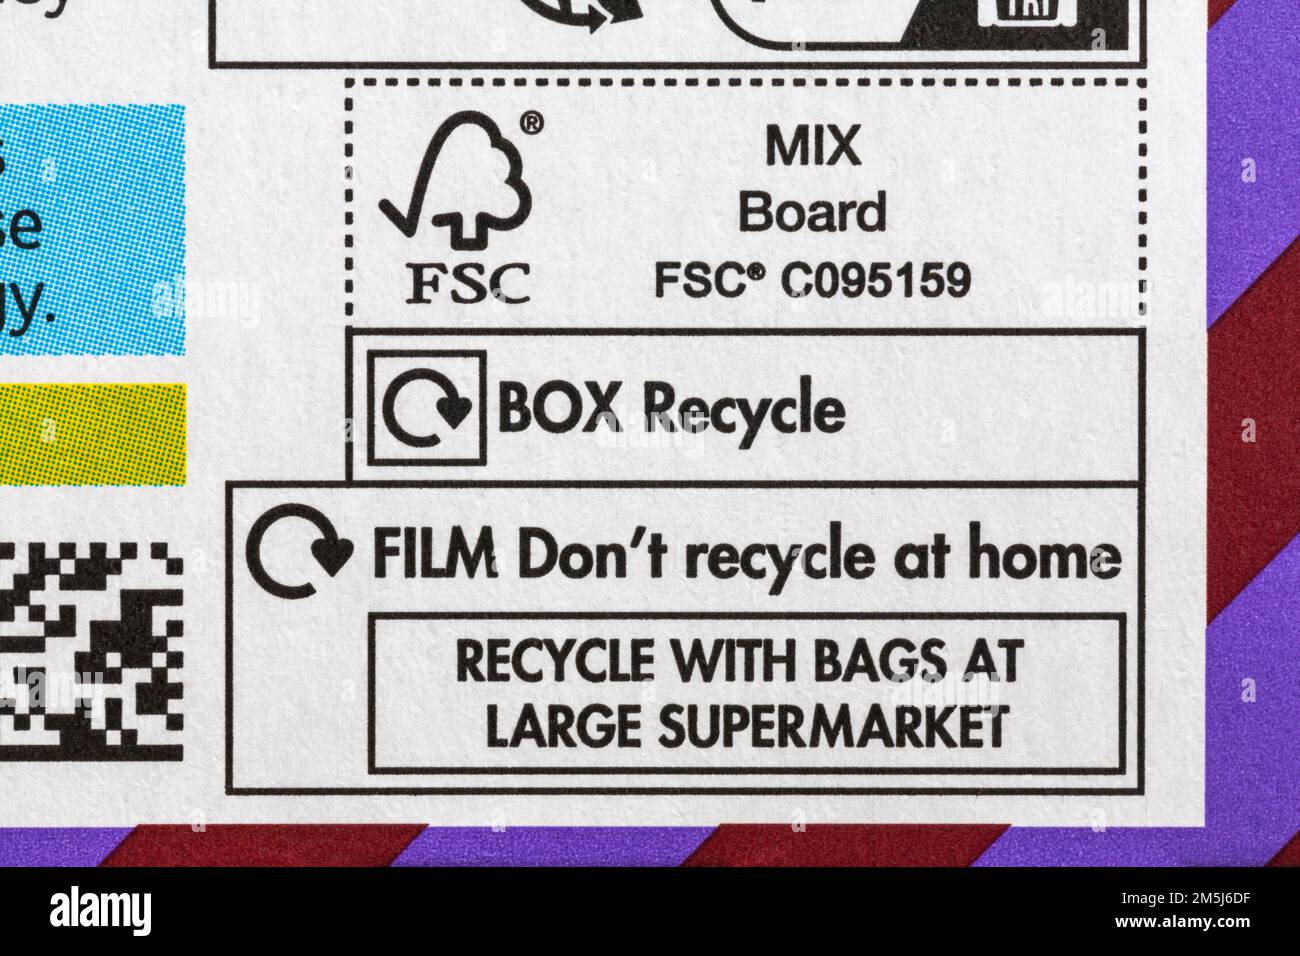 Informazioni sul riciclaggio, film non riciclare a casa riciclare con borse presso grande supermercato, scatola riciclare il logo FSC su doppio cioccolato panettone di M&S. Foto Stock